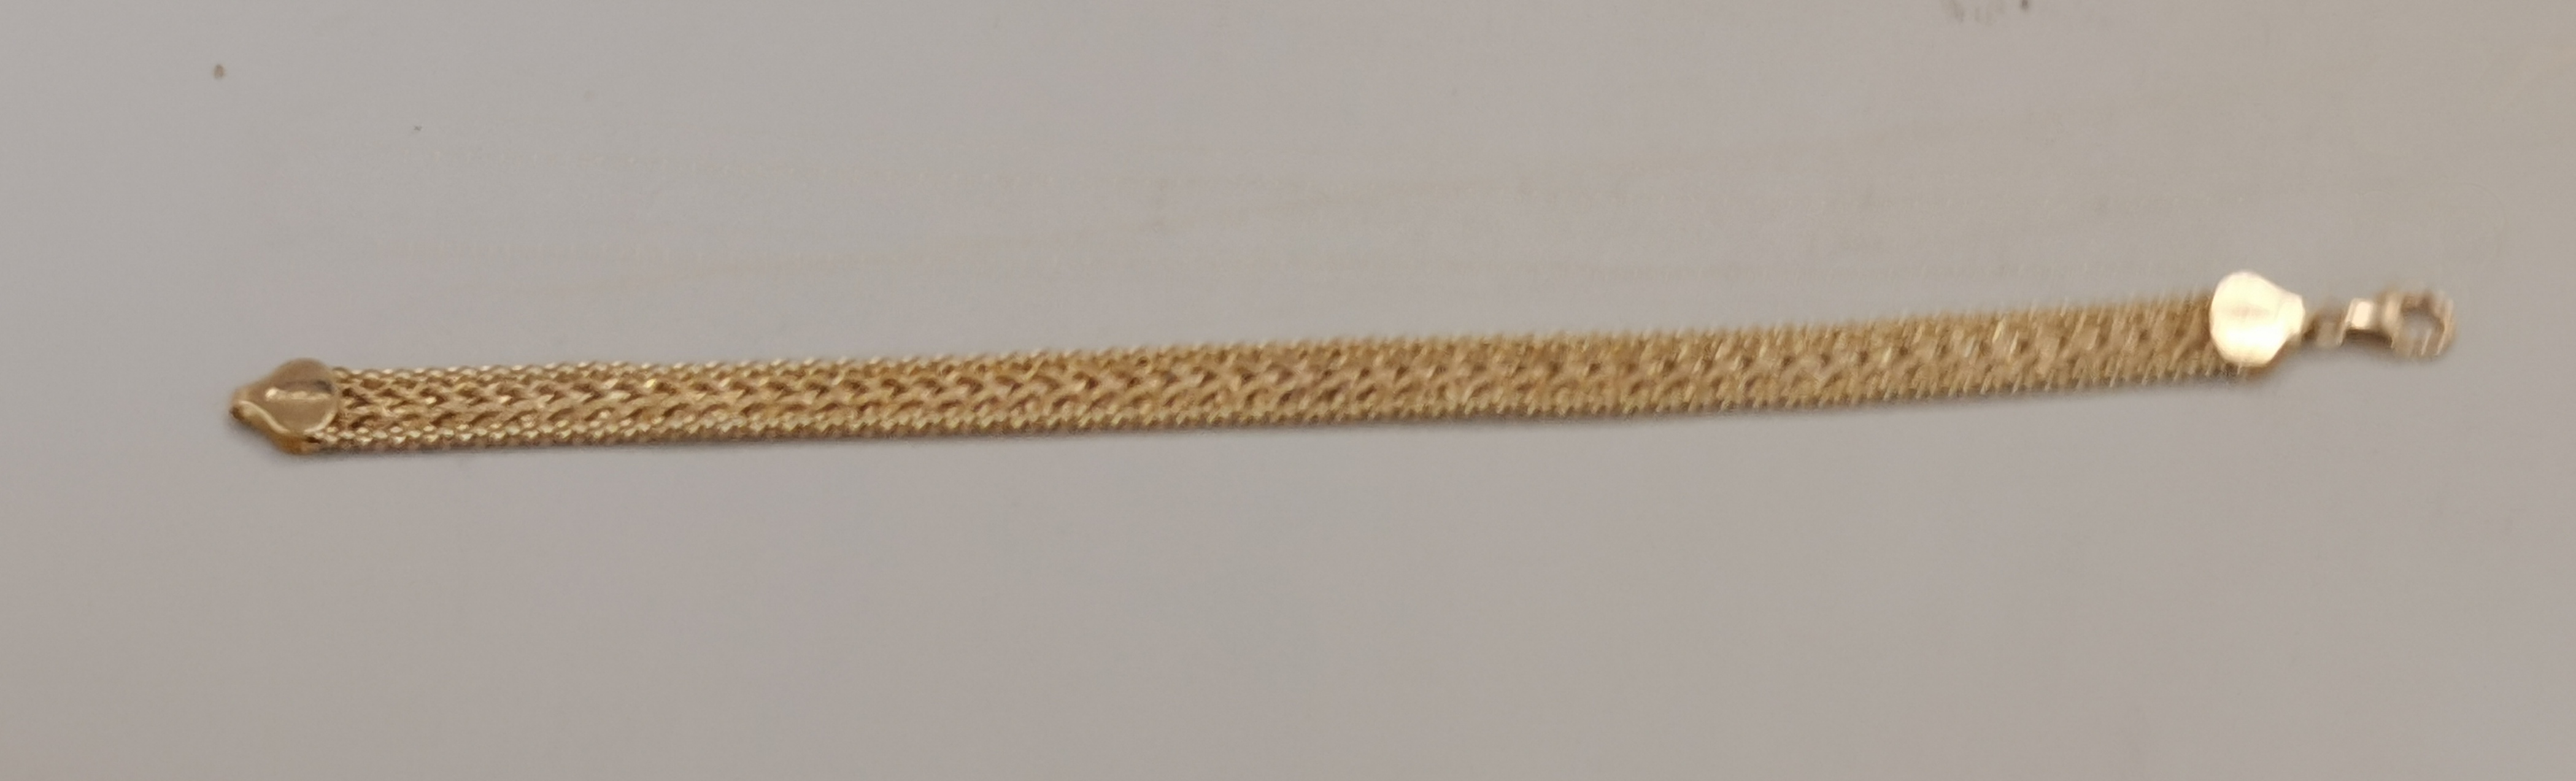 A 14k gold bracelet 6g 18cm long